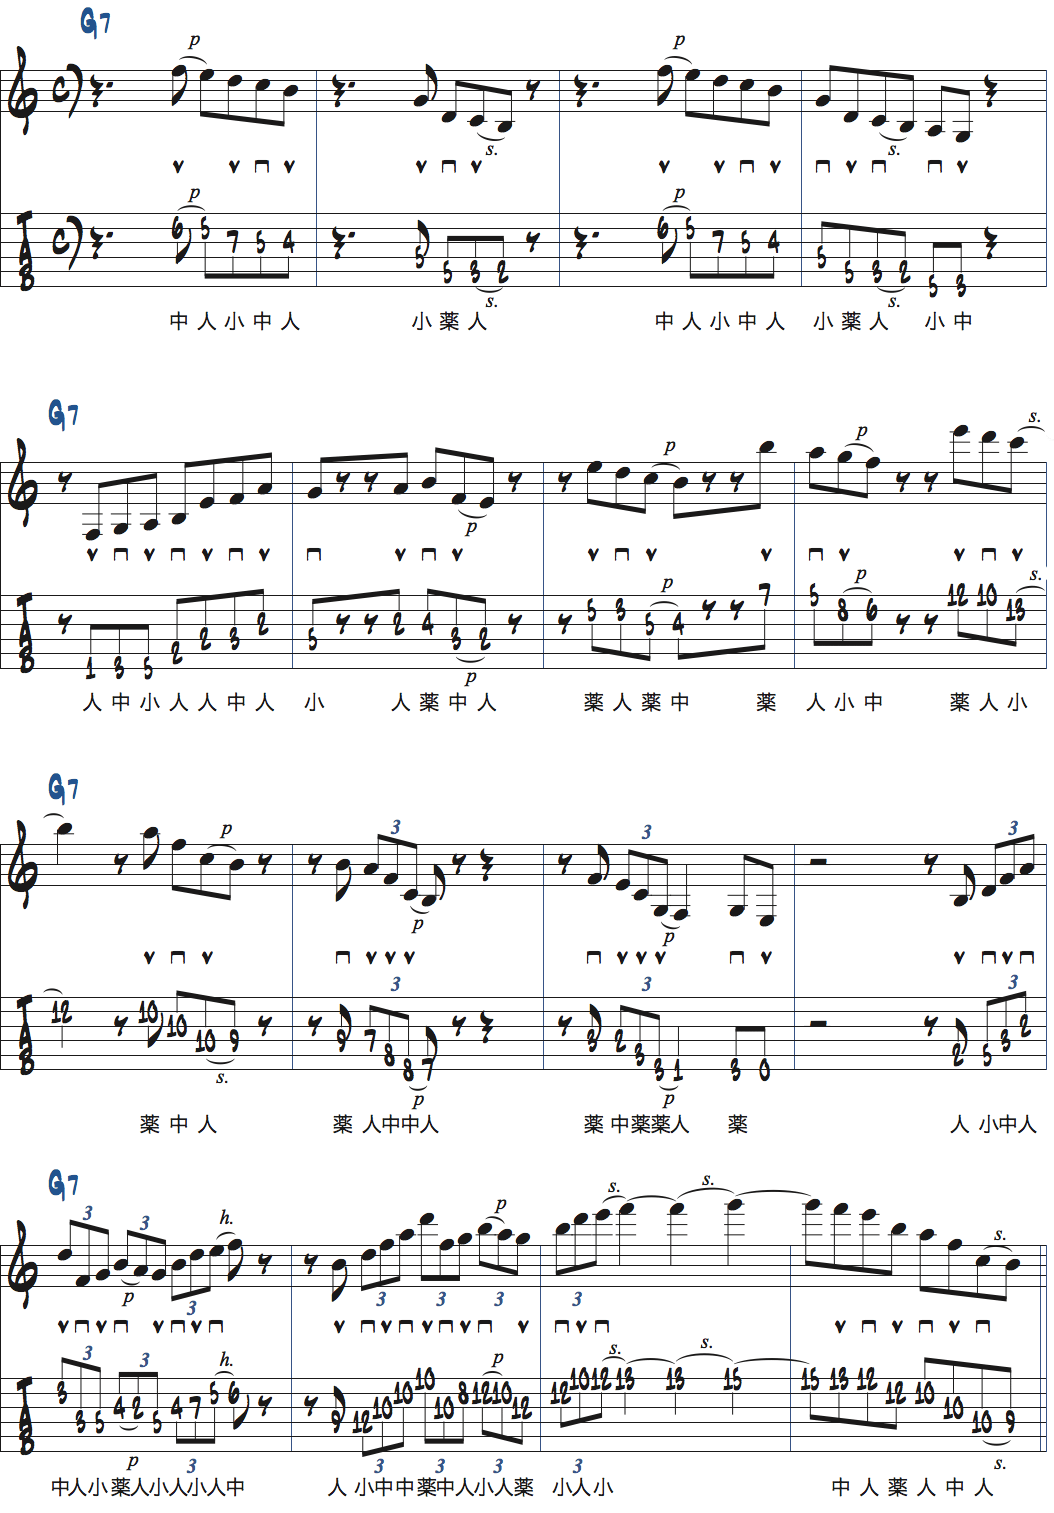 リックを使ったG7コード上でのアドリブ例楽譜